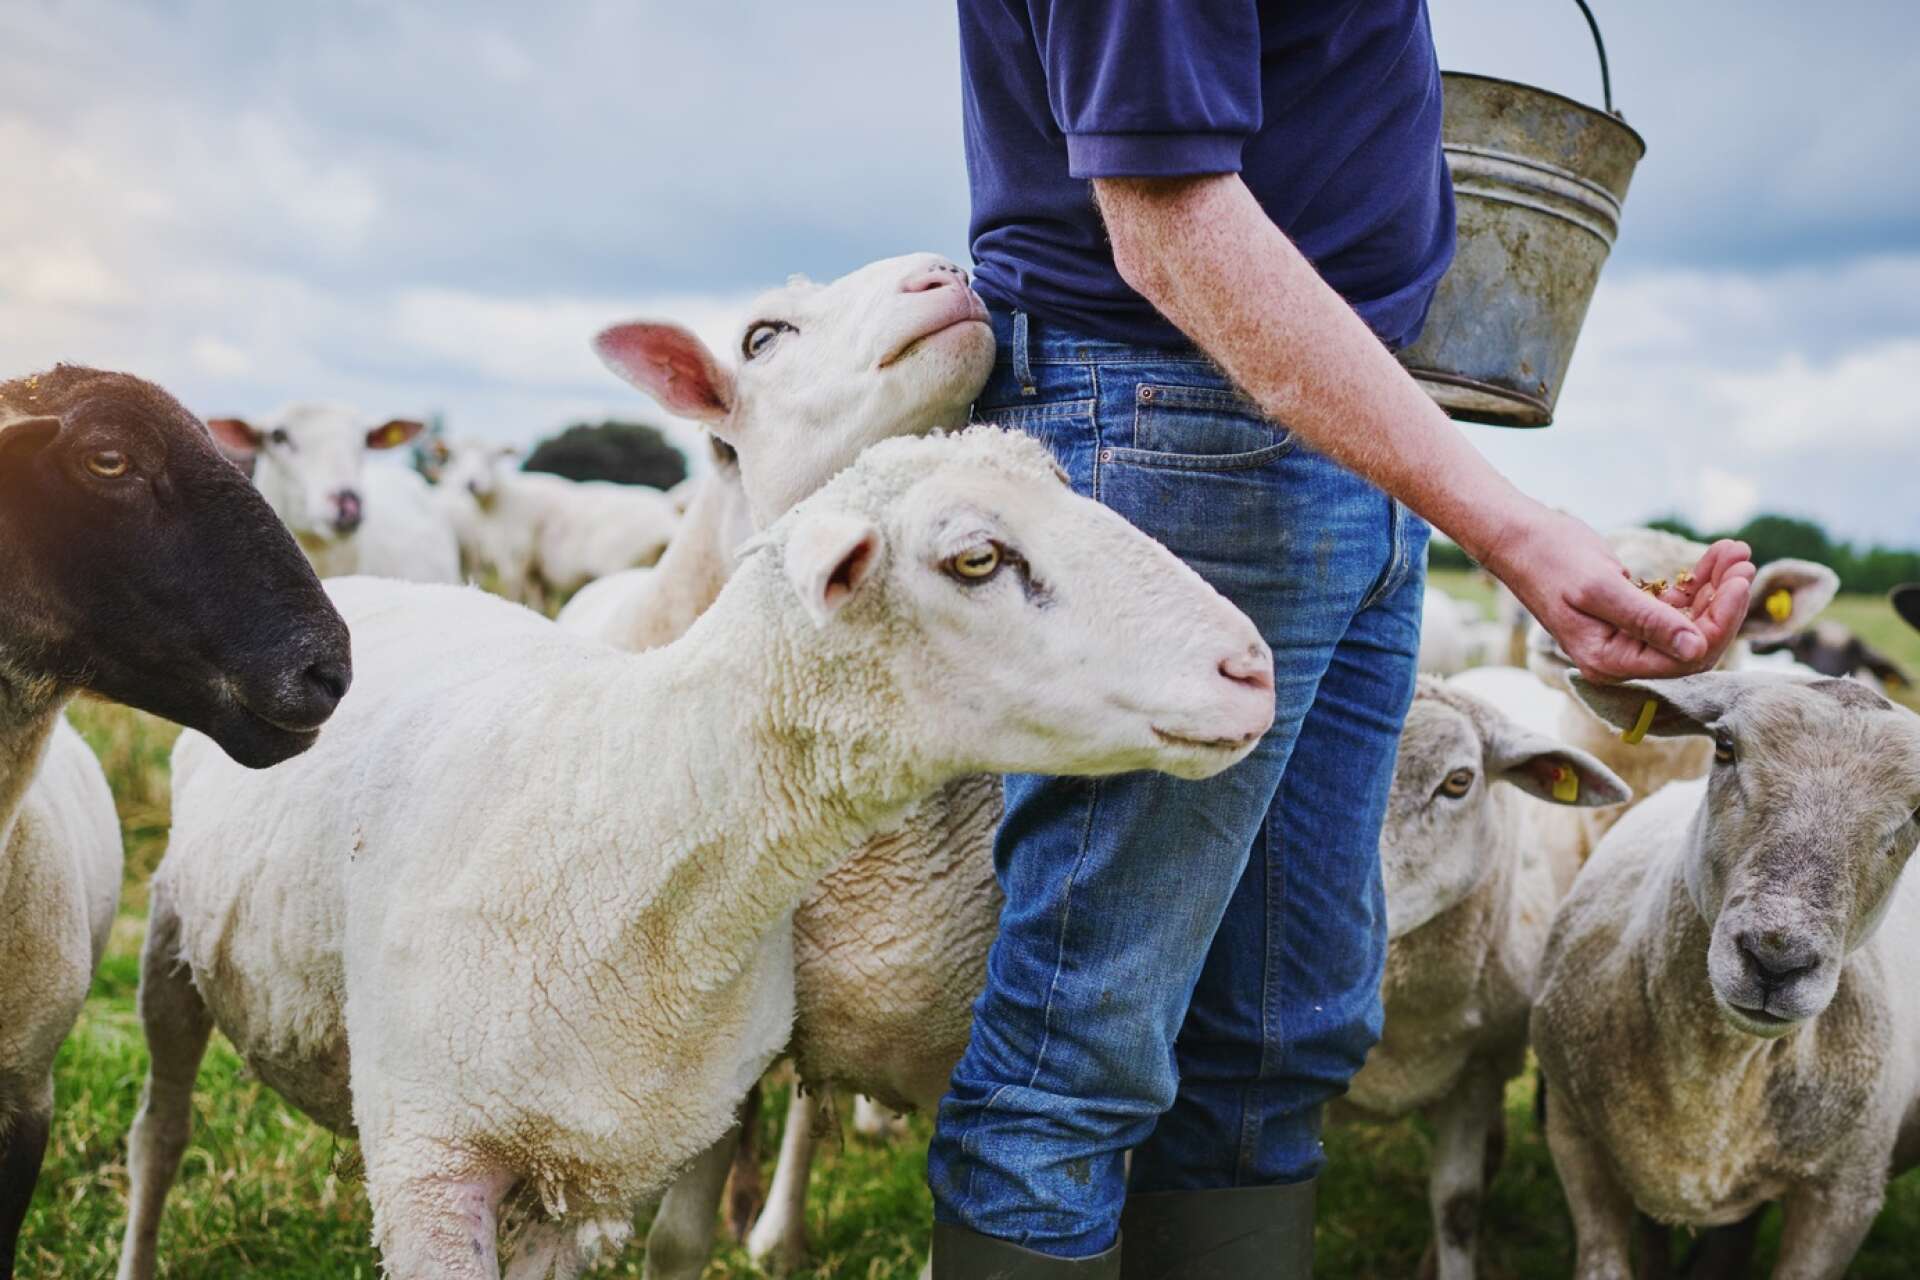 Under de senaste 5 åren har antalet jordbruksföretag med får förändrats ganska lite. Däremot har antalet djur per företag minskat, främst till följd av att de som har får har färre lamm. 

